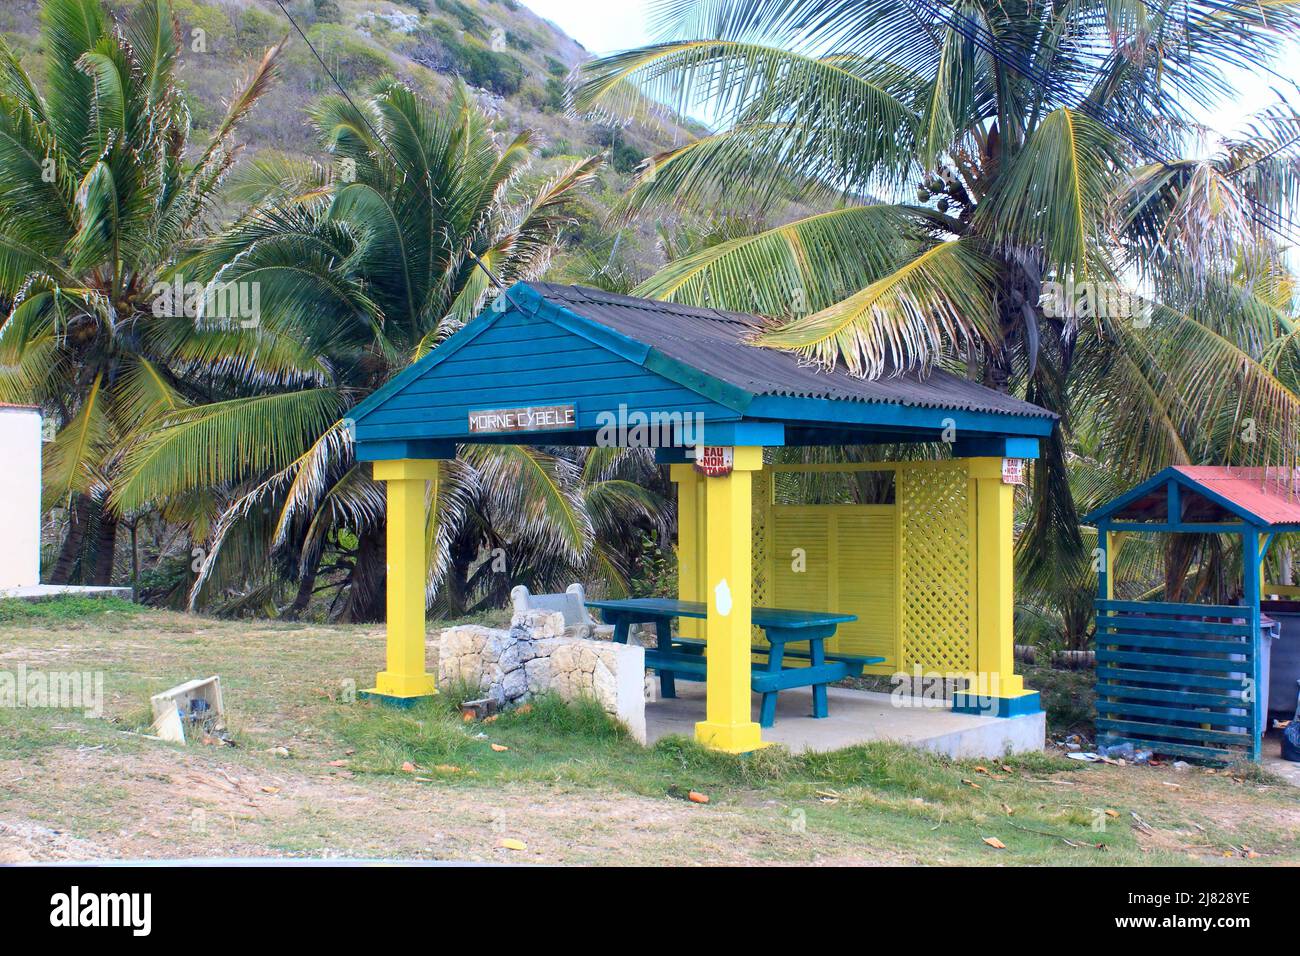 ABRIS bleu et jaune pour pic-nic sur l'île de La Désirade, Guadeloupe Stockfoto